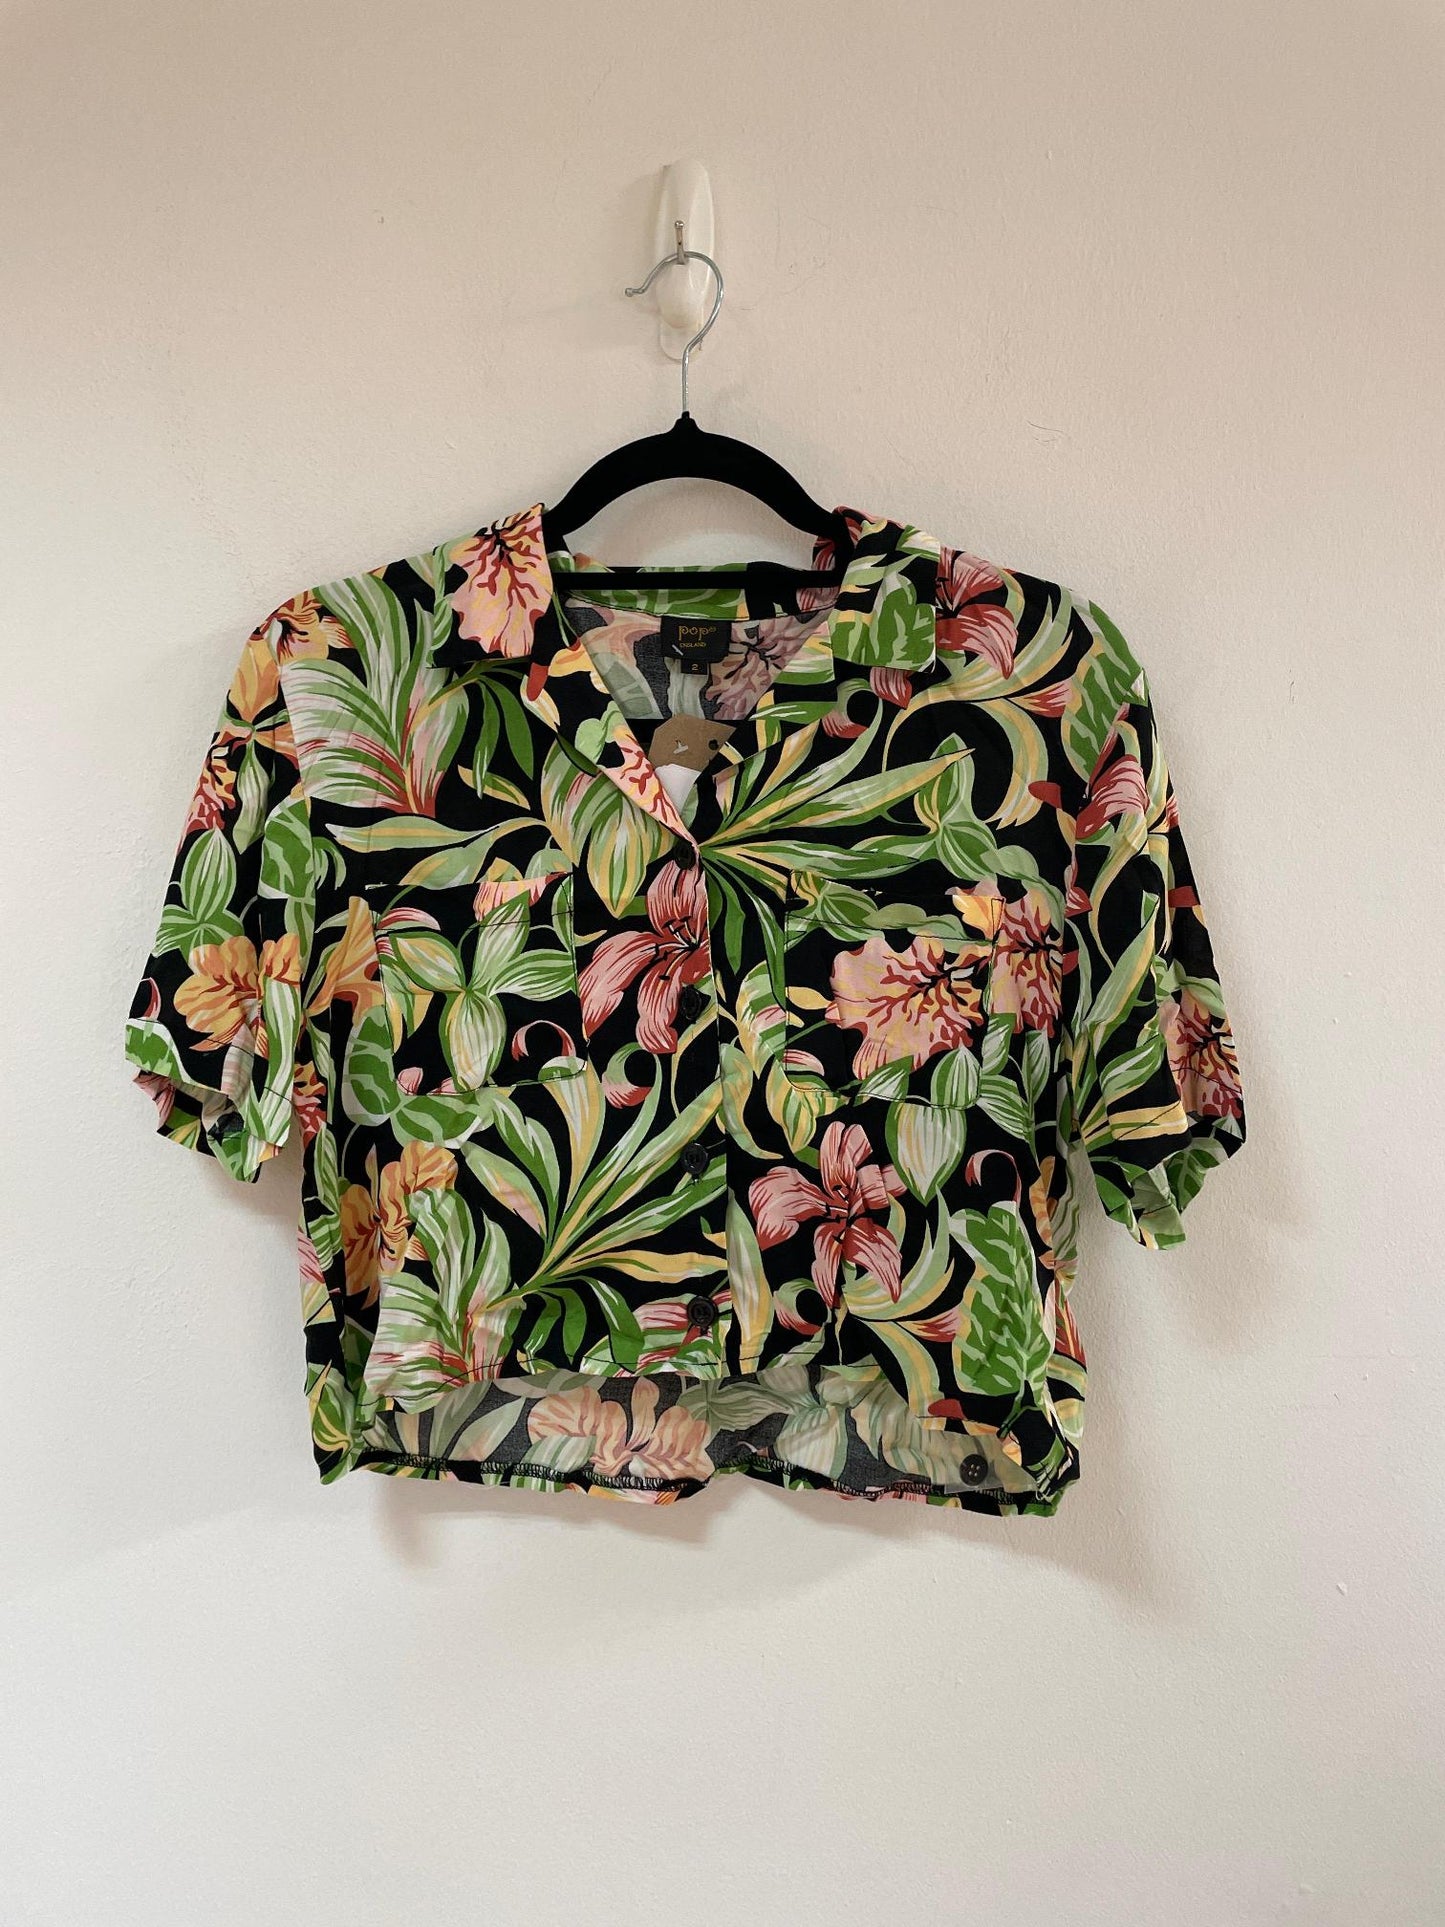 Tropical print cropped shirt, Pop, Size 8 (Rayon)